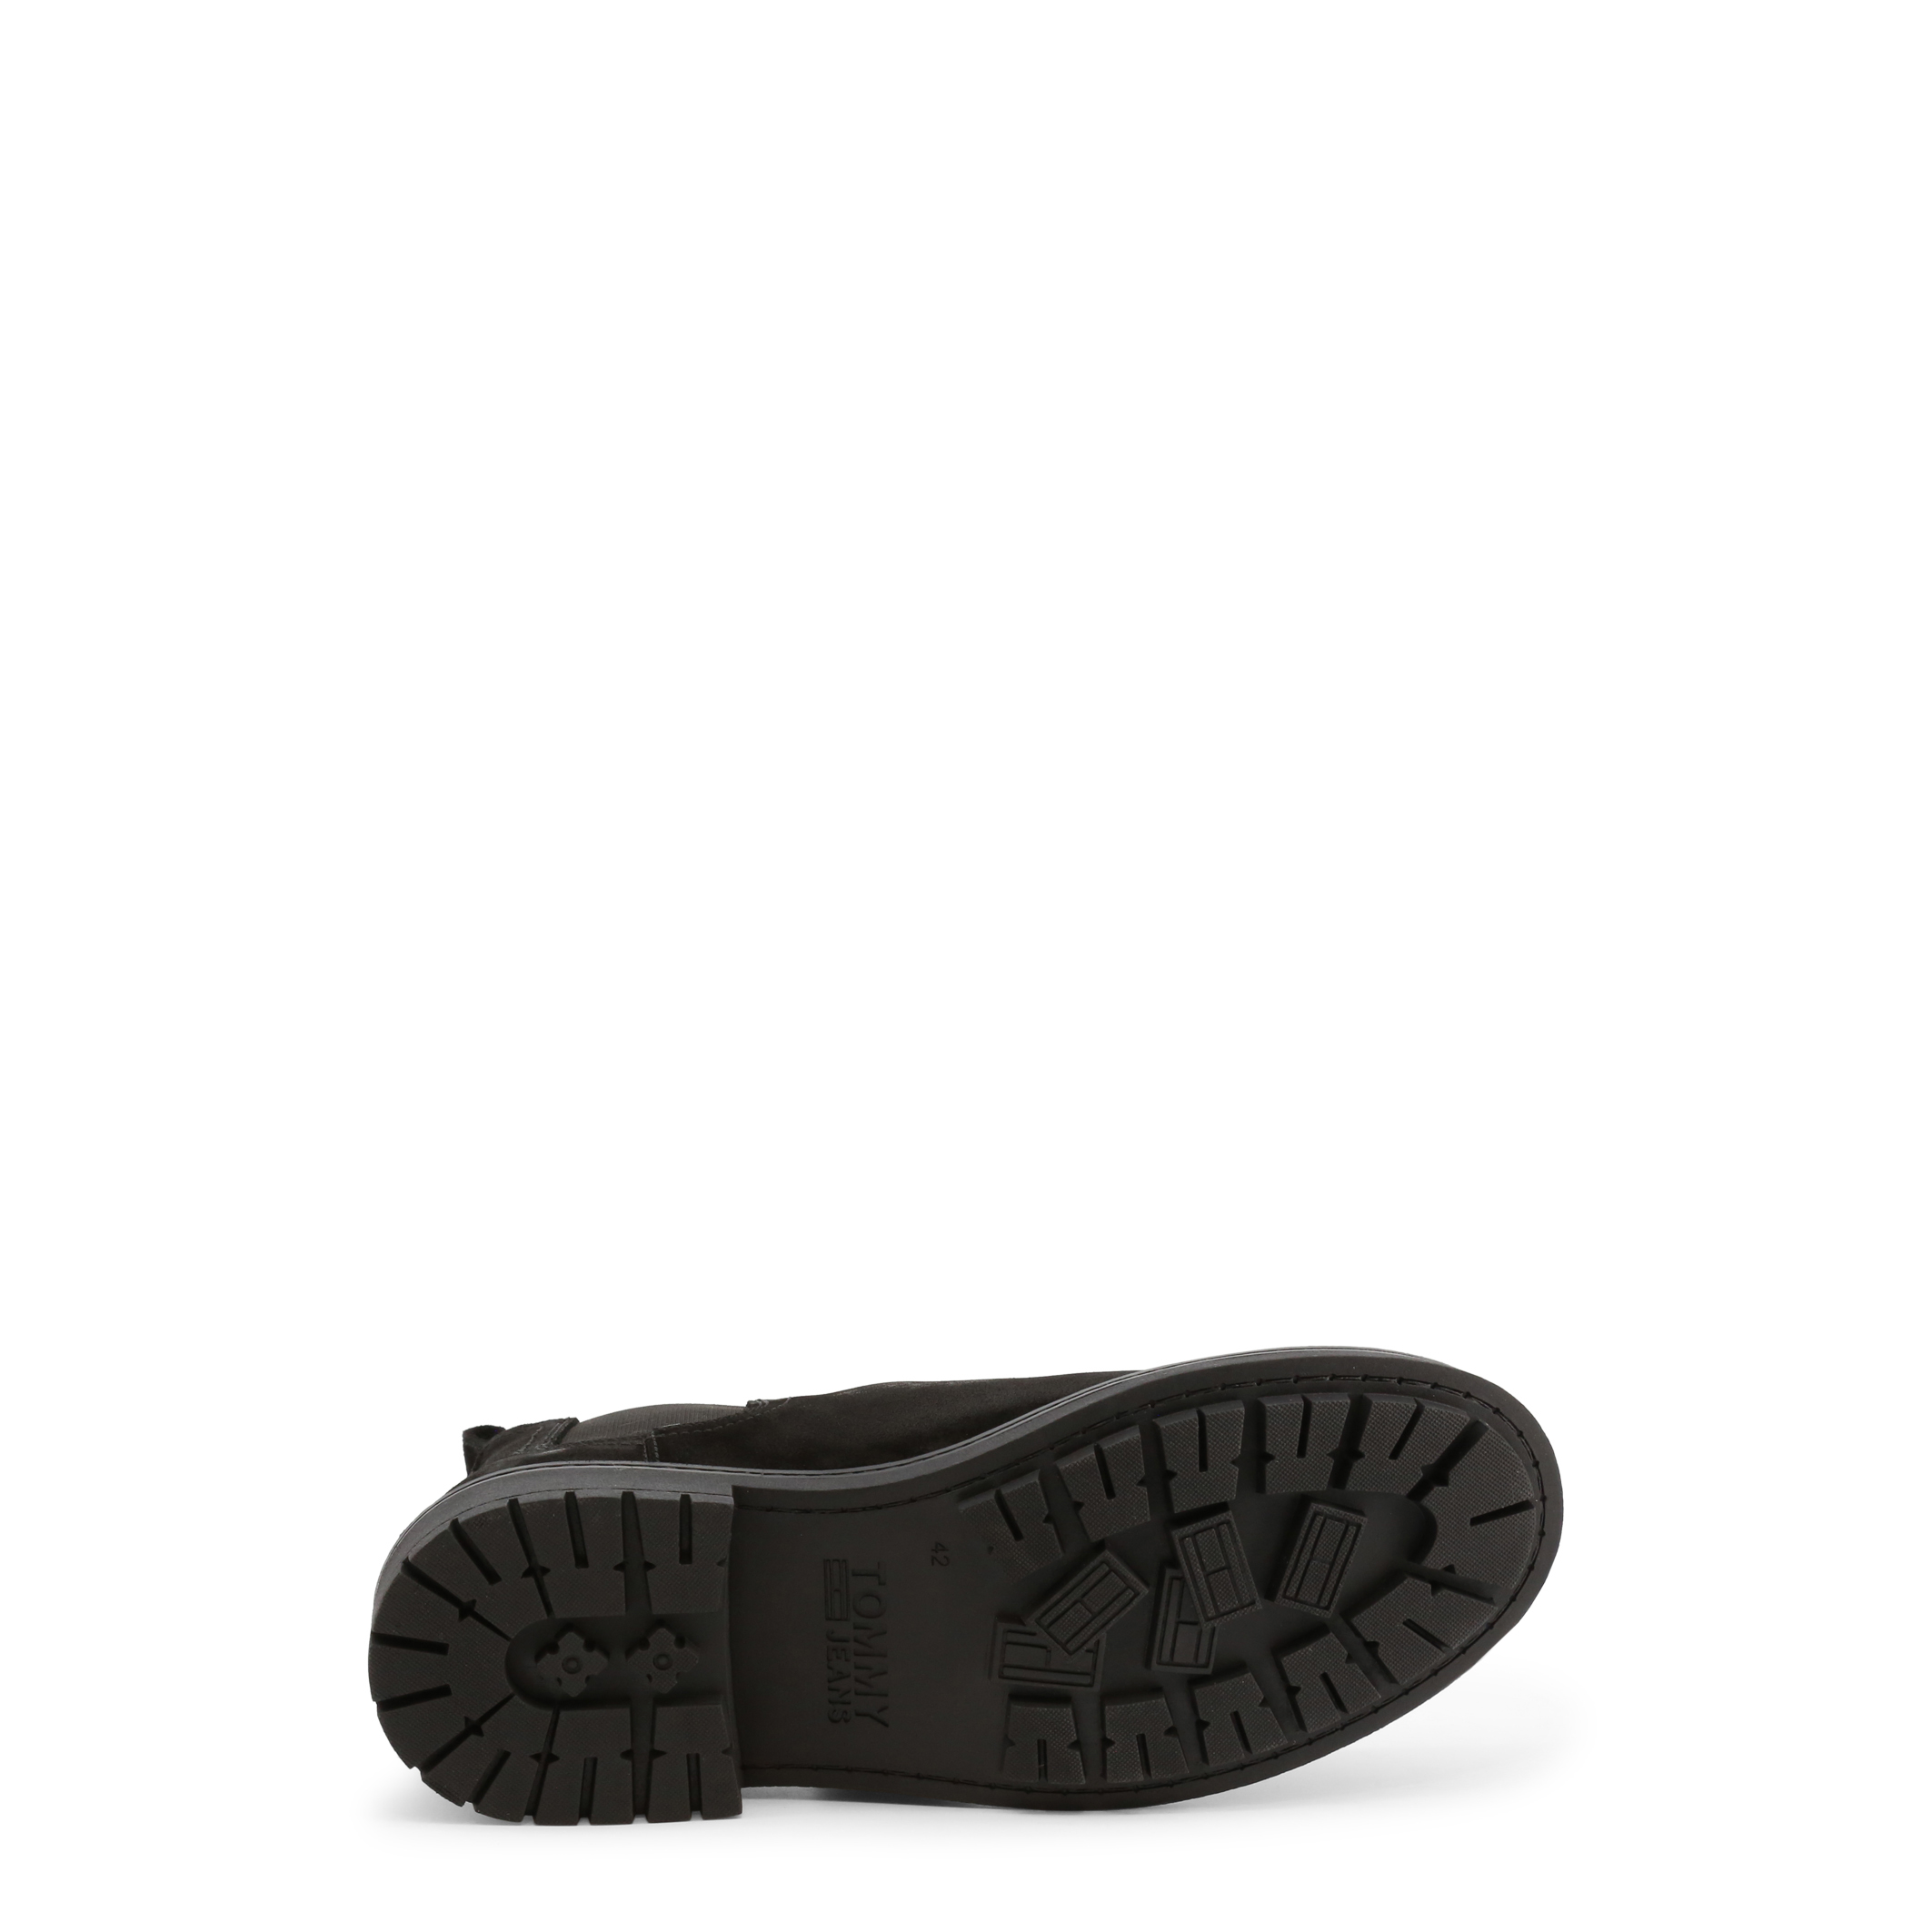 Tommy Hilfiger Black Ankle boots for Men - EM0EM00826